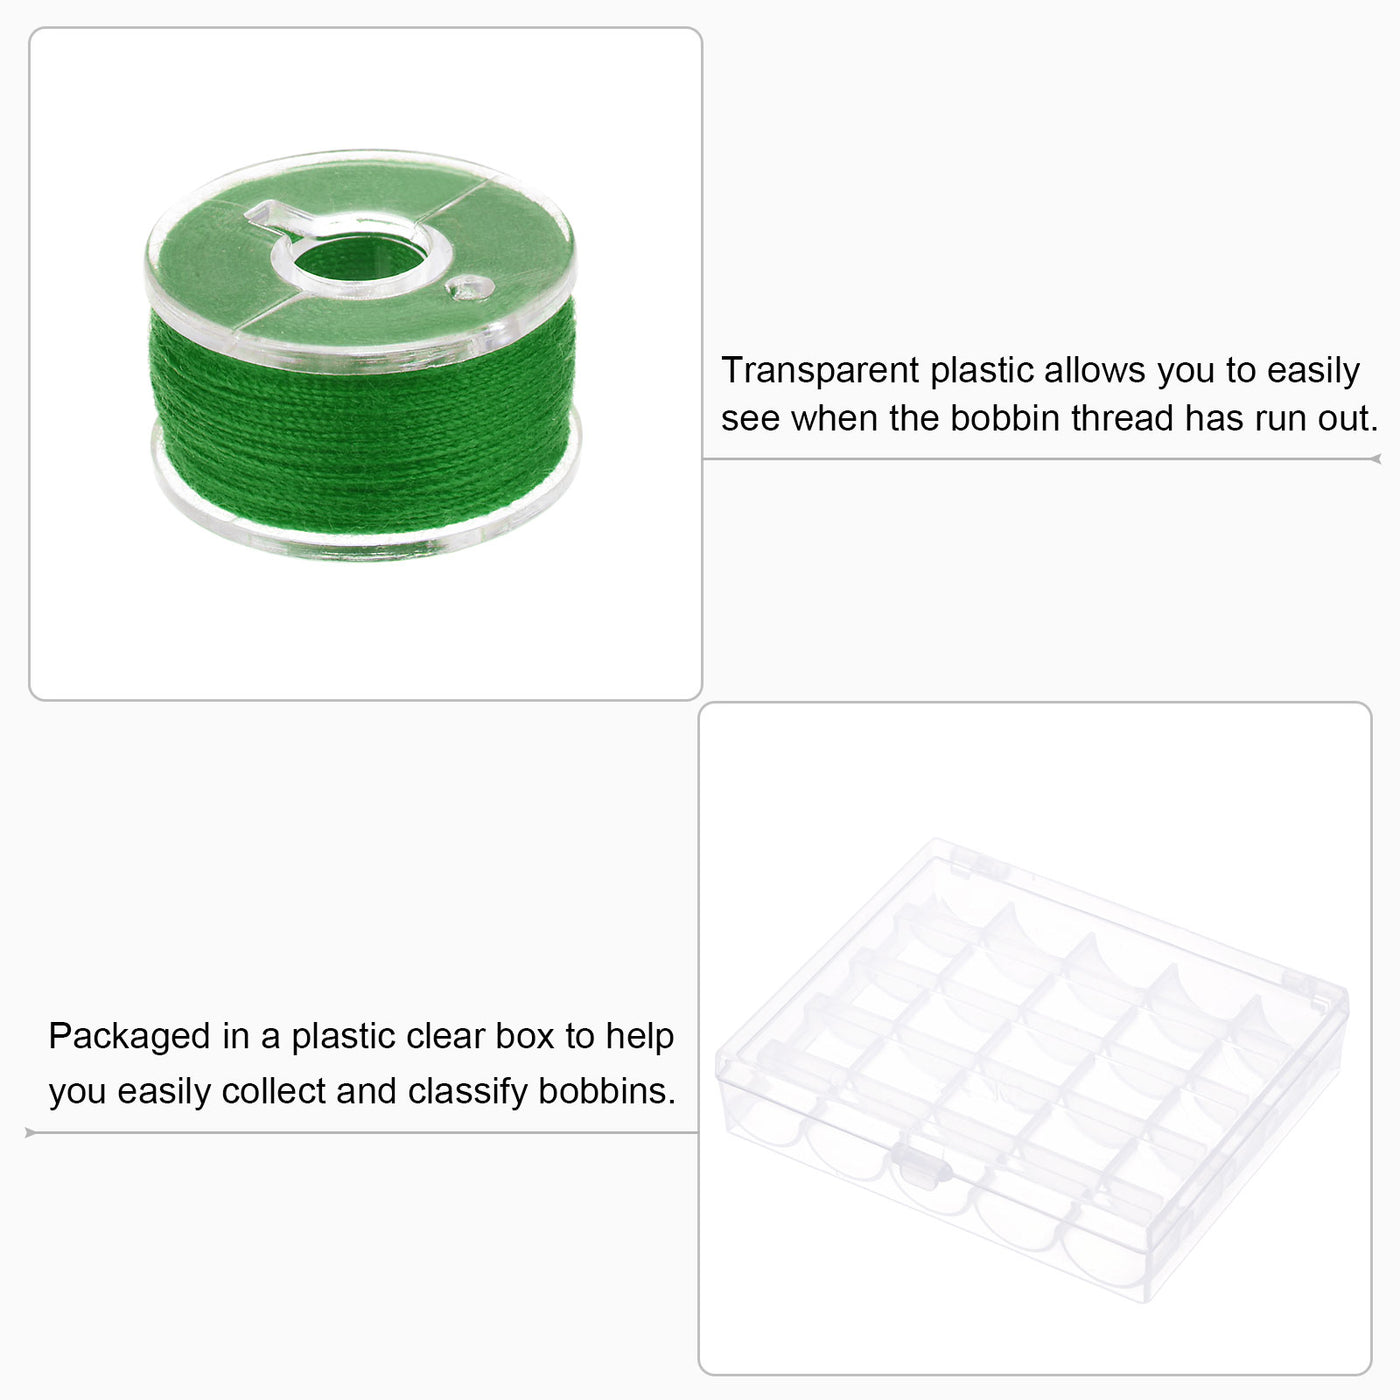 Harfington 2set Prewound Sewing Bobbin Thread Set with 25 Grids Storage Box, Dark Green